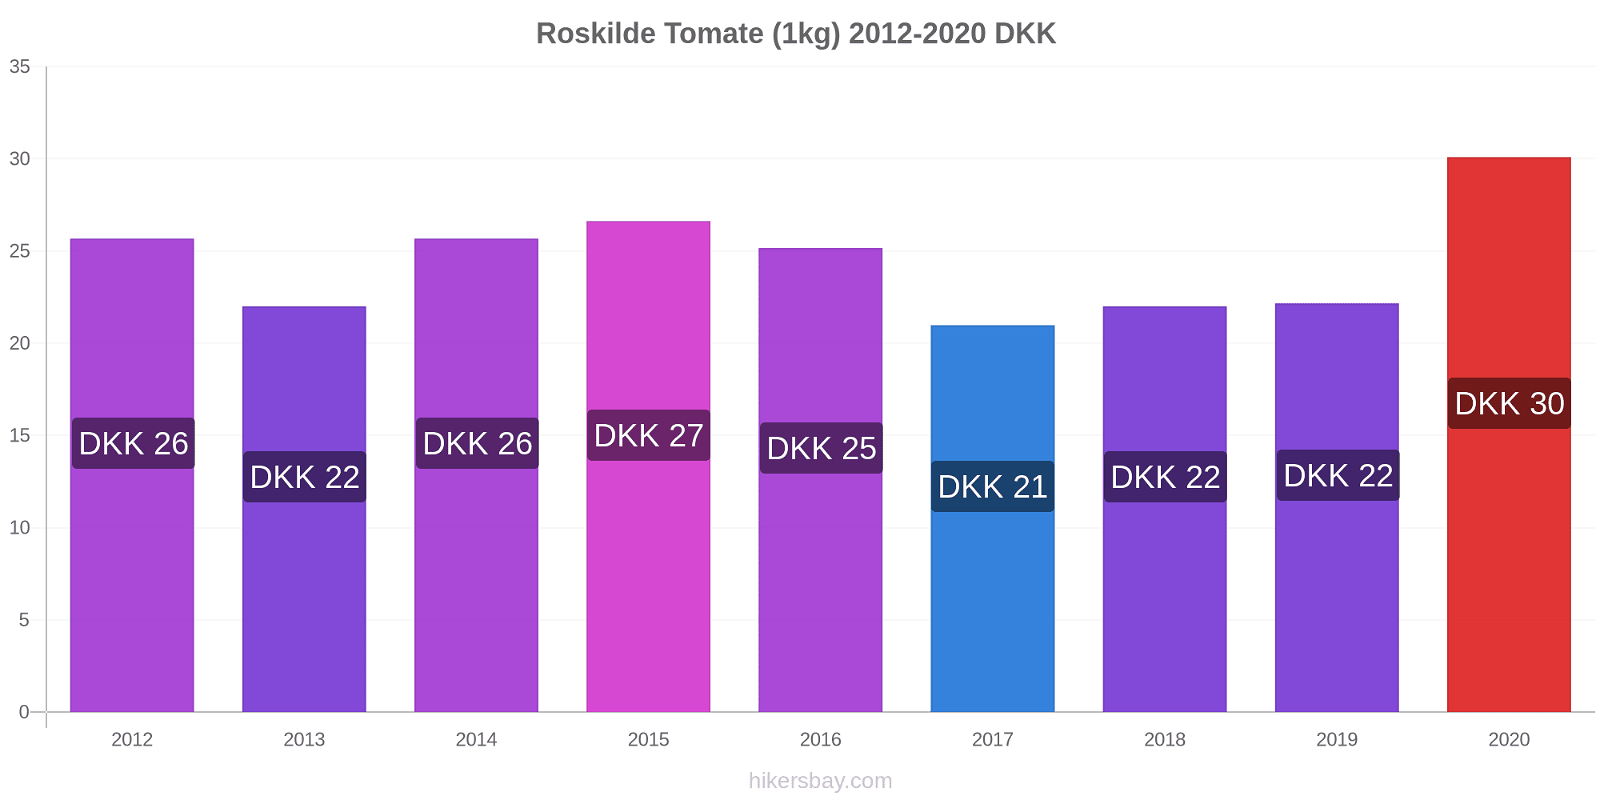 Roskilde changements de prix Tomate (1kg) hikersbay.com